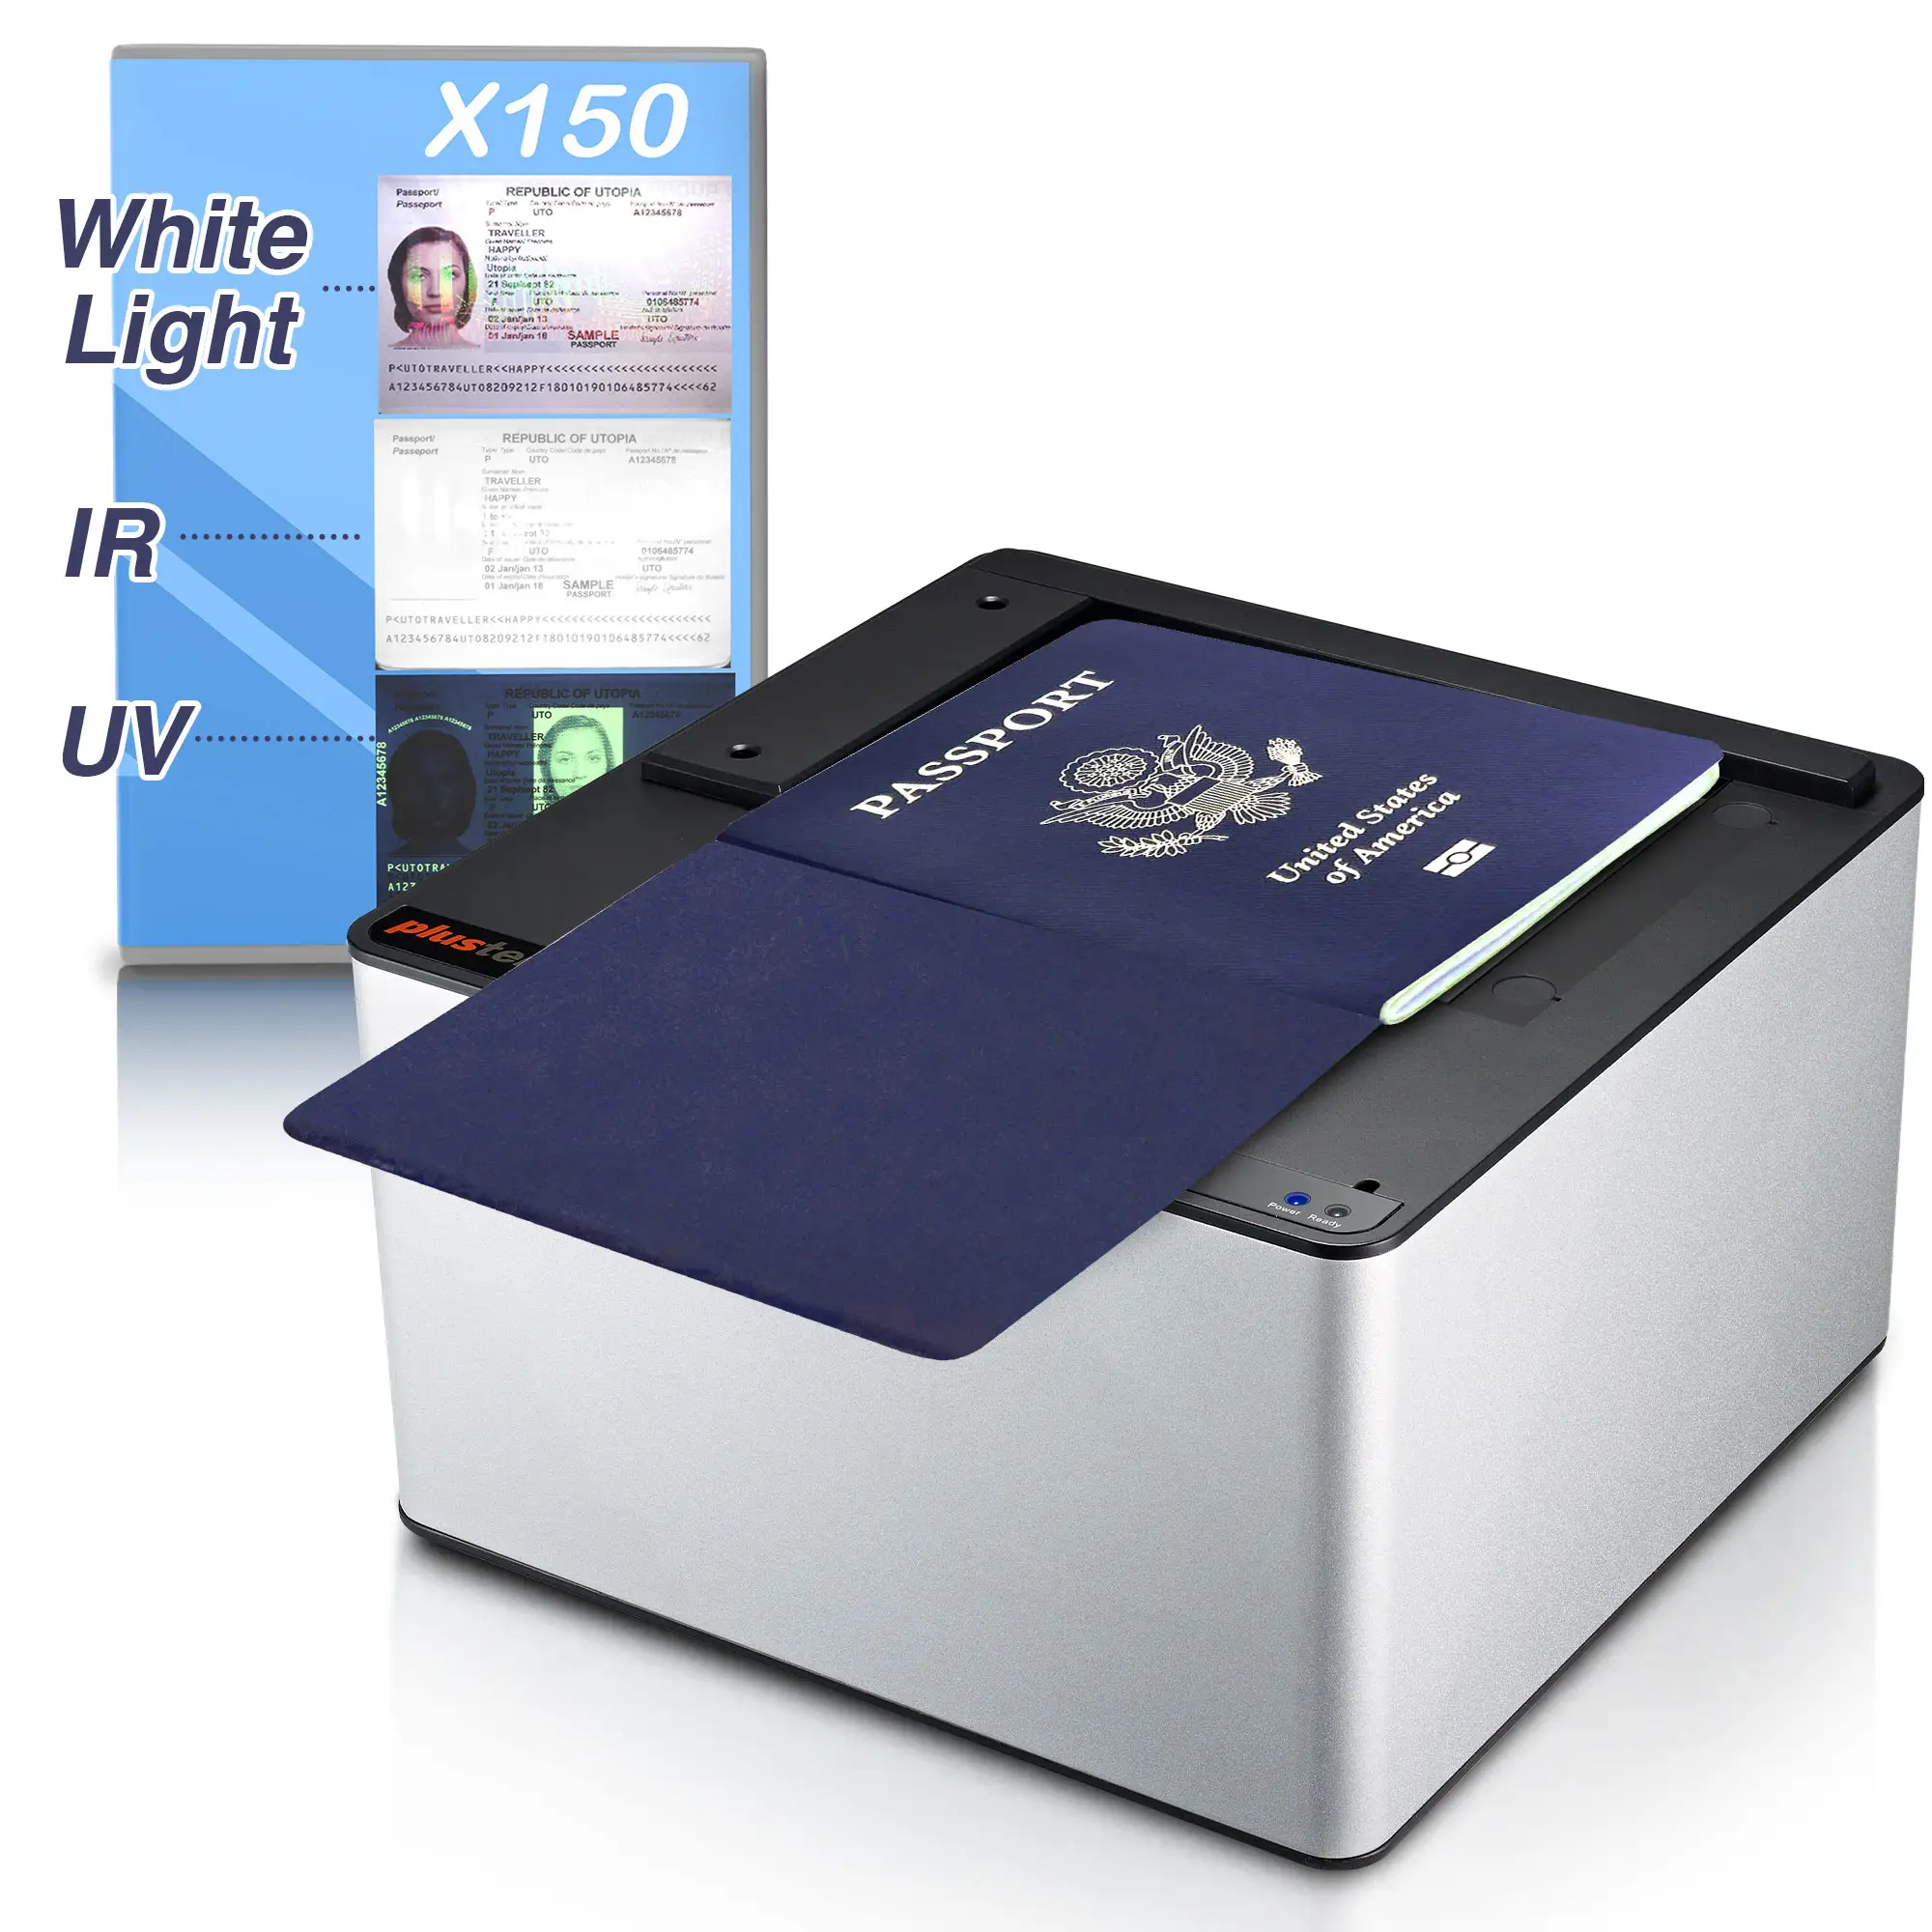 Pasaport tarayıcı Plustek X150 Kiosk pasaport okuyucu beyaz ışık IR UV, kimlik kartı, sürücü belgesi MRZ TD 1 2 3 ICAO DOC 9303